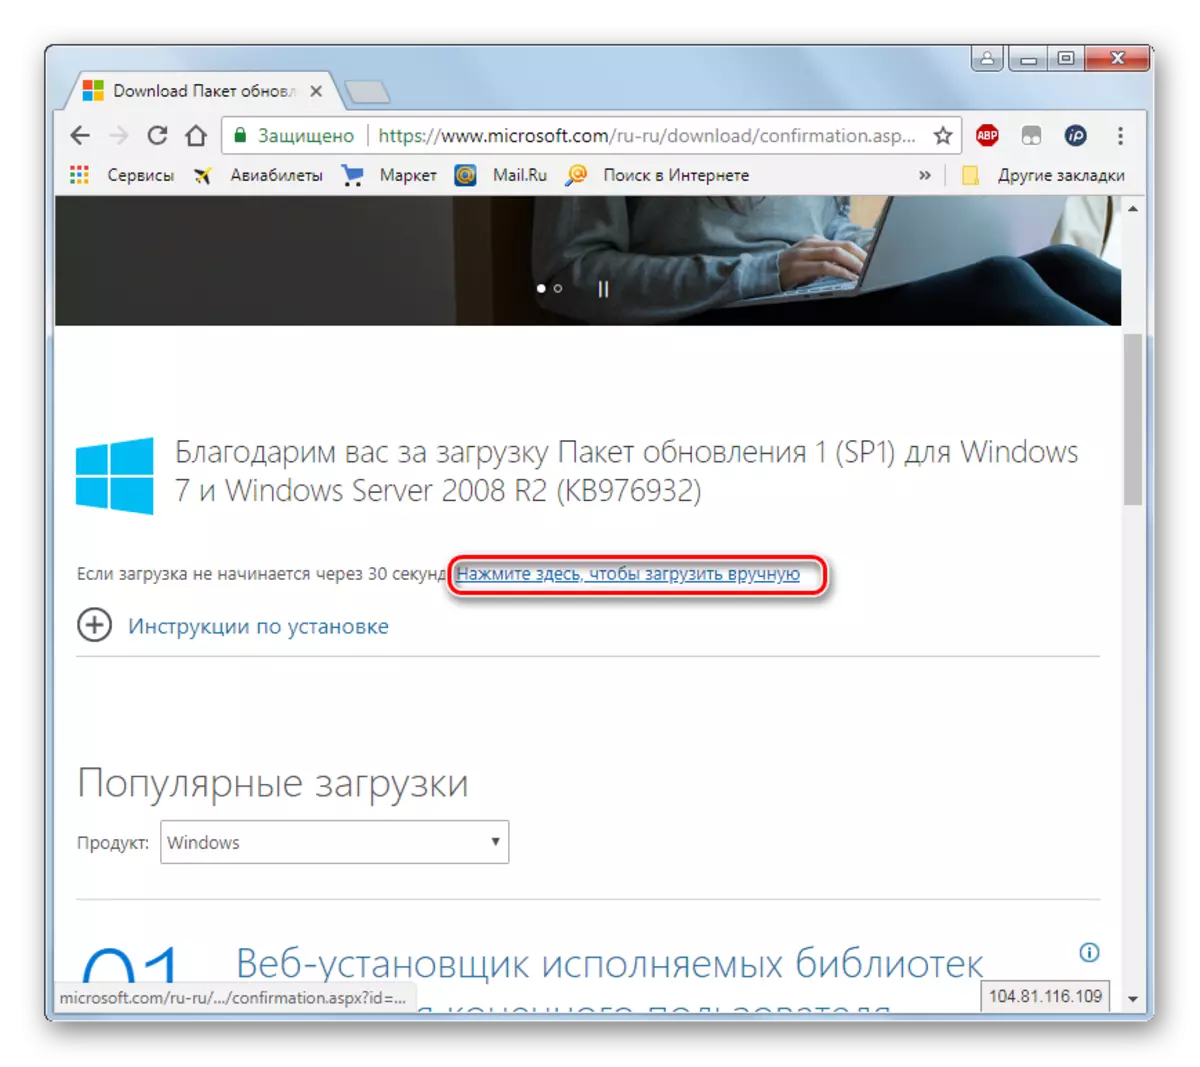 מעבר לטעינת שירות ידנית 1 באתר הרשמי של Microsoft באמצעות הדפדפן ב- Windows 7